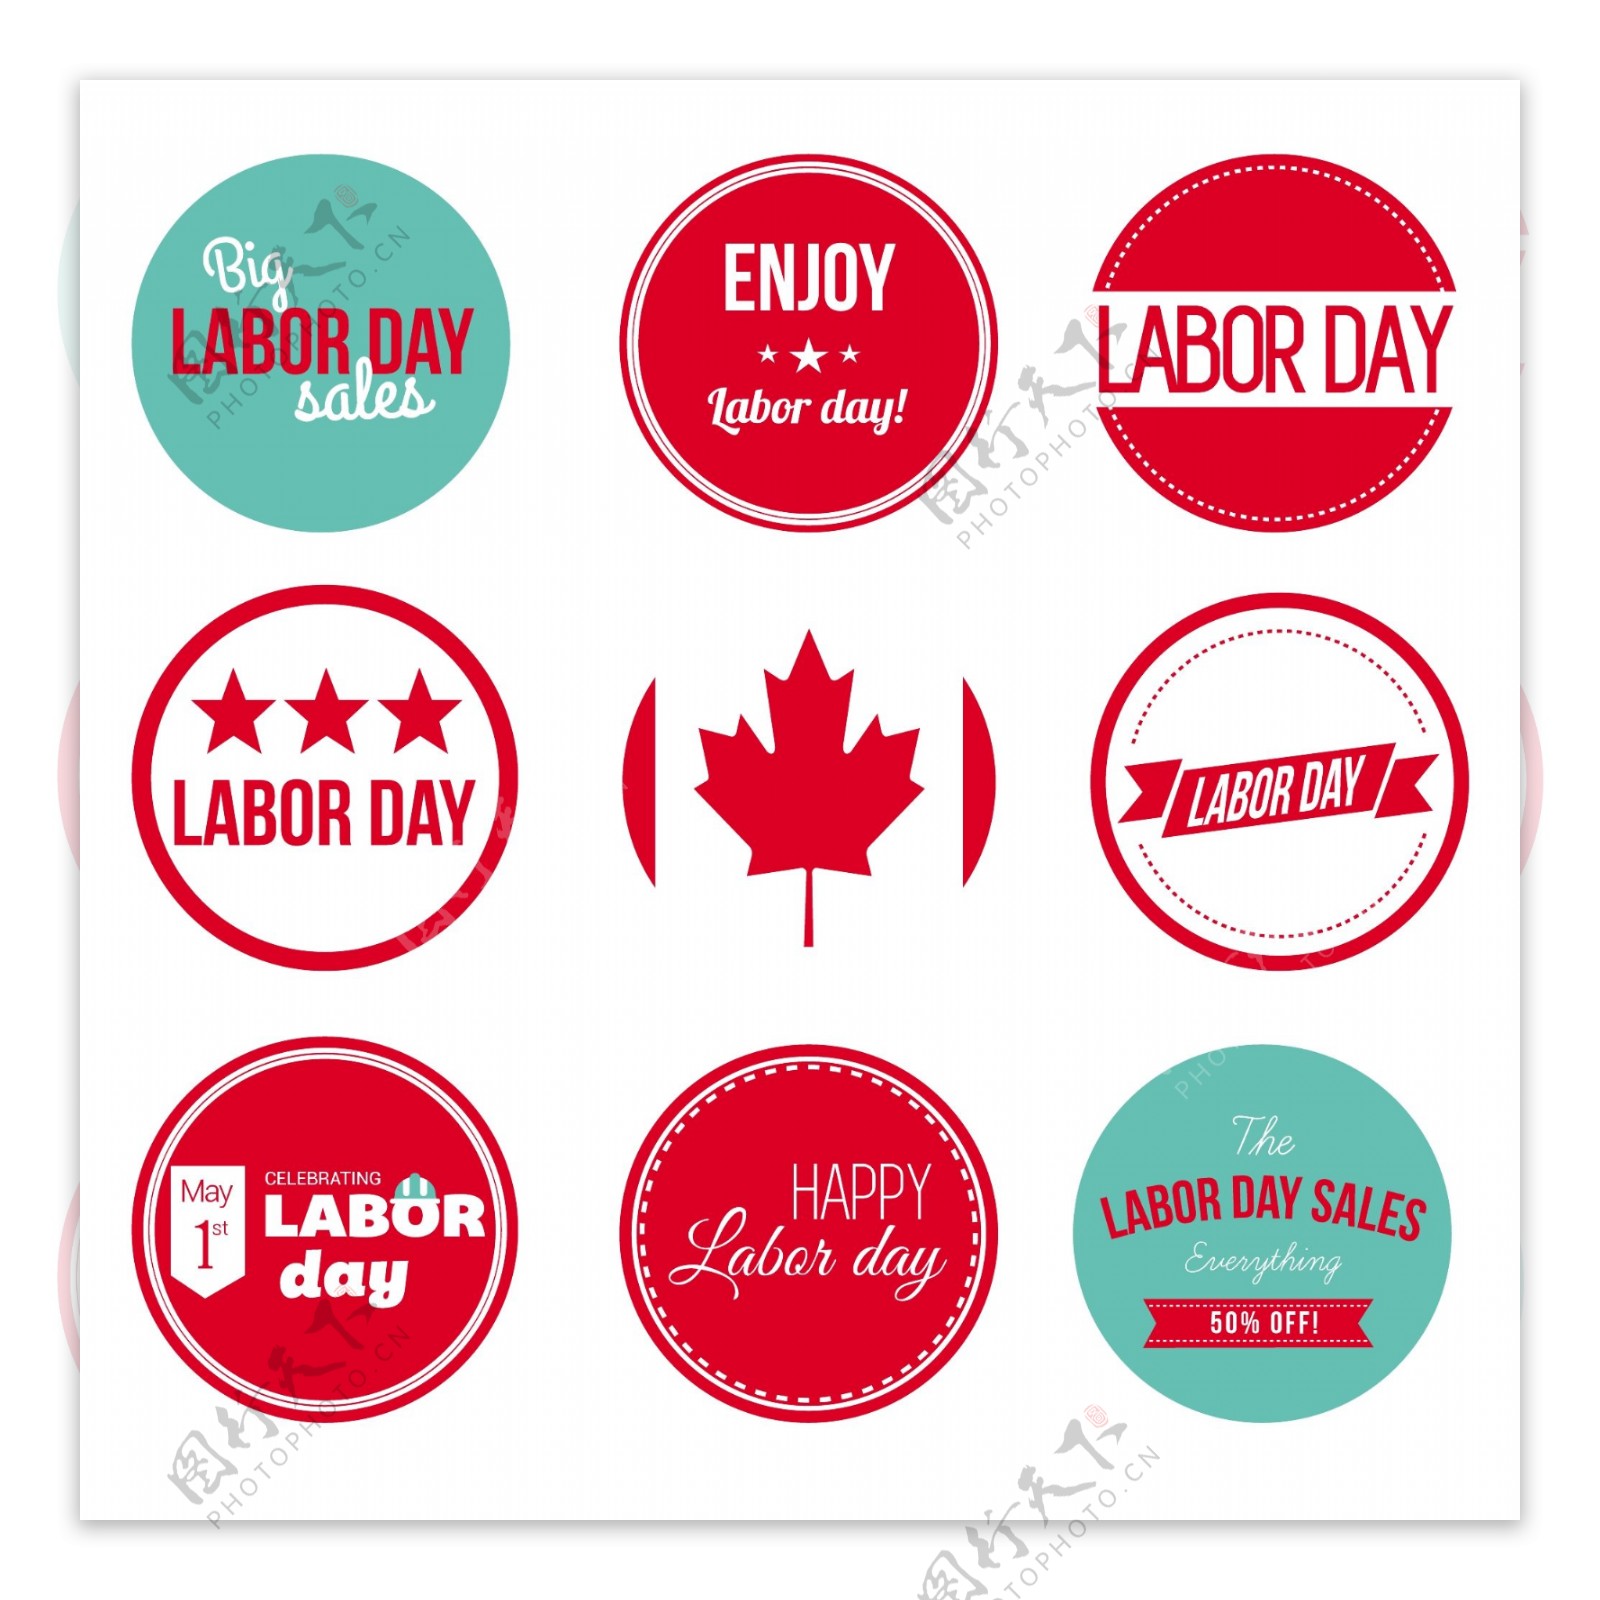 加拿大劳动节的标签和徽章